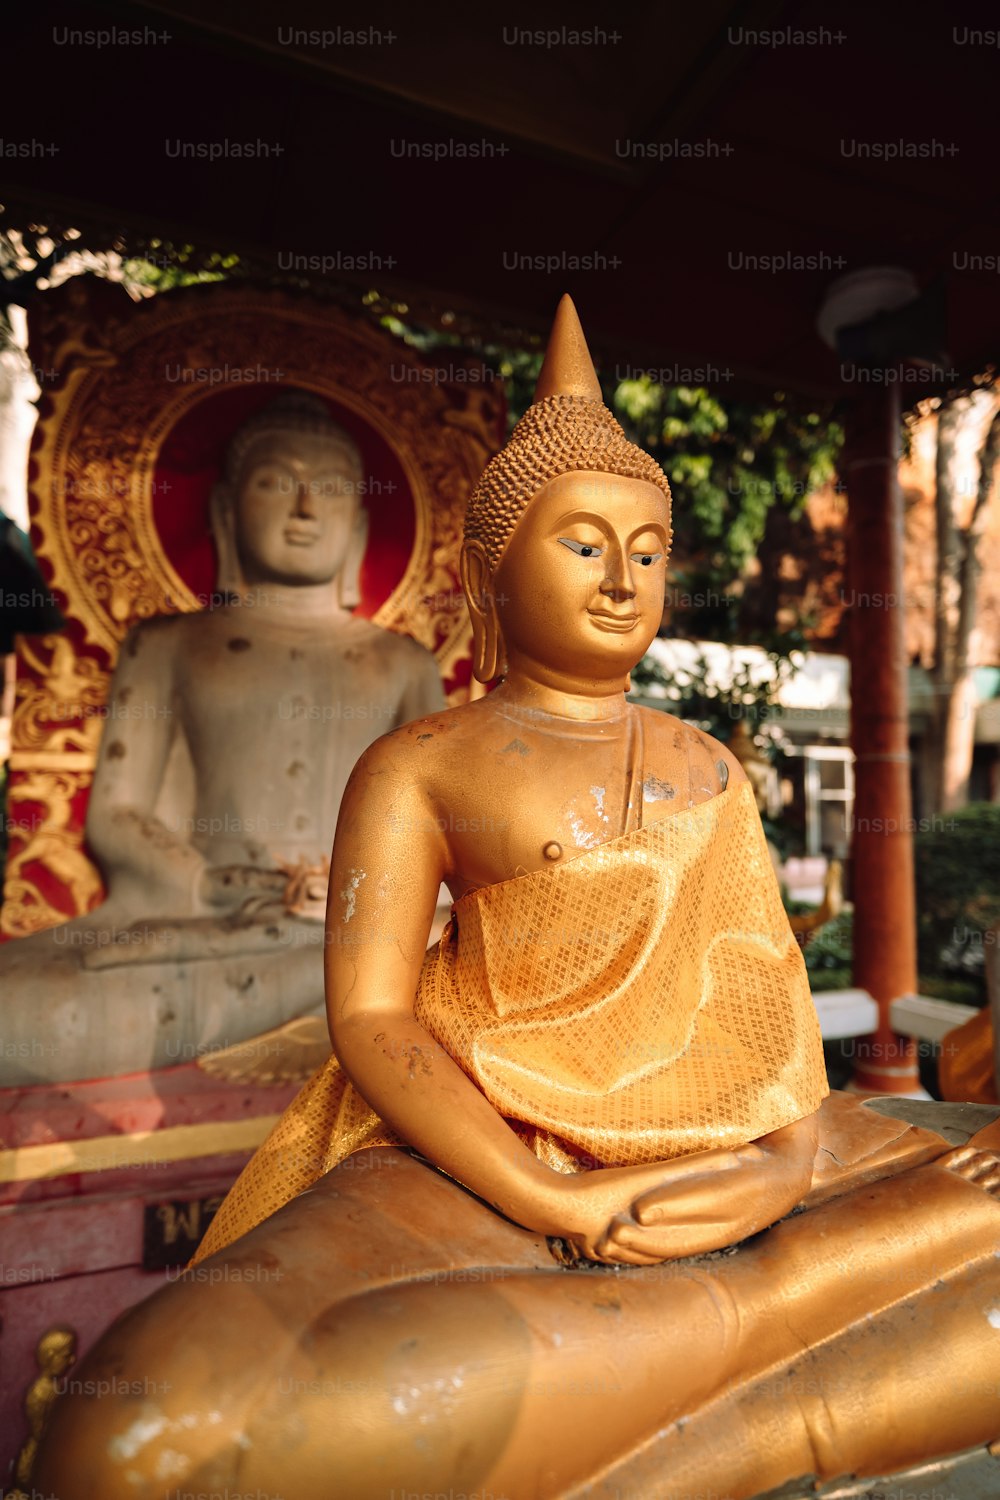 Eine goldene Buddha-Statue sitzt auf einer Holzstatue